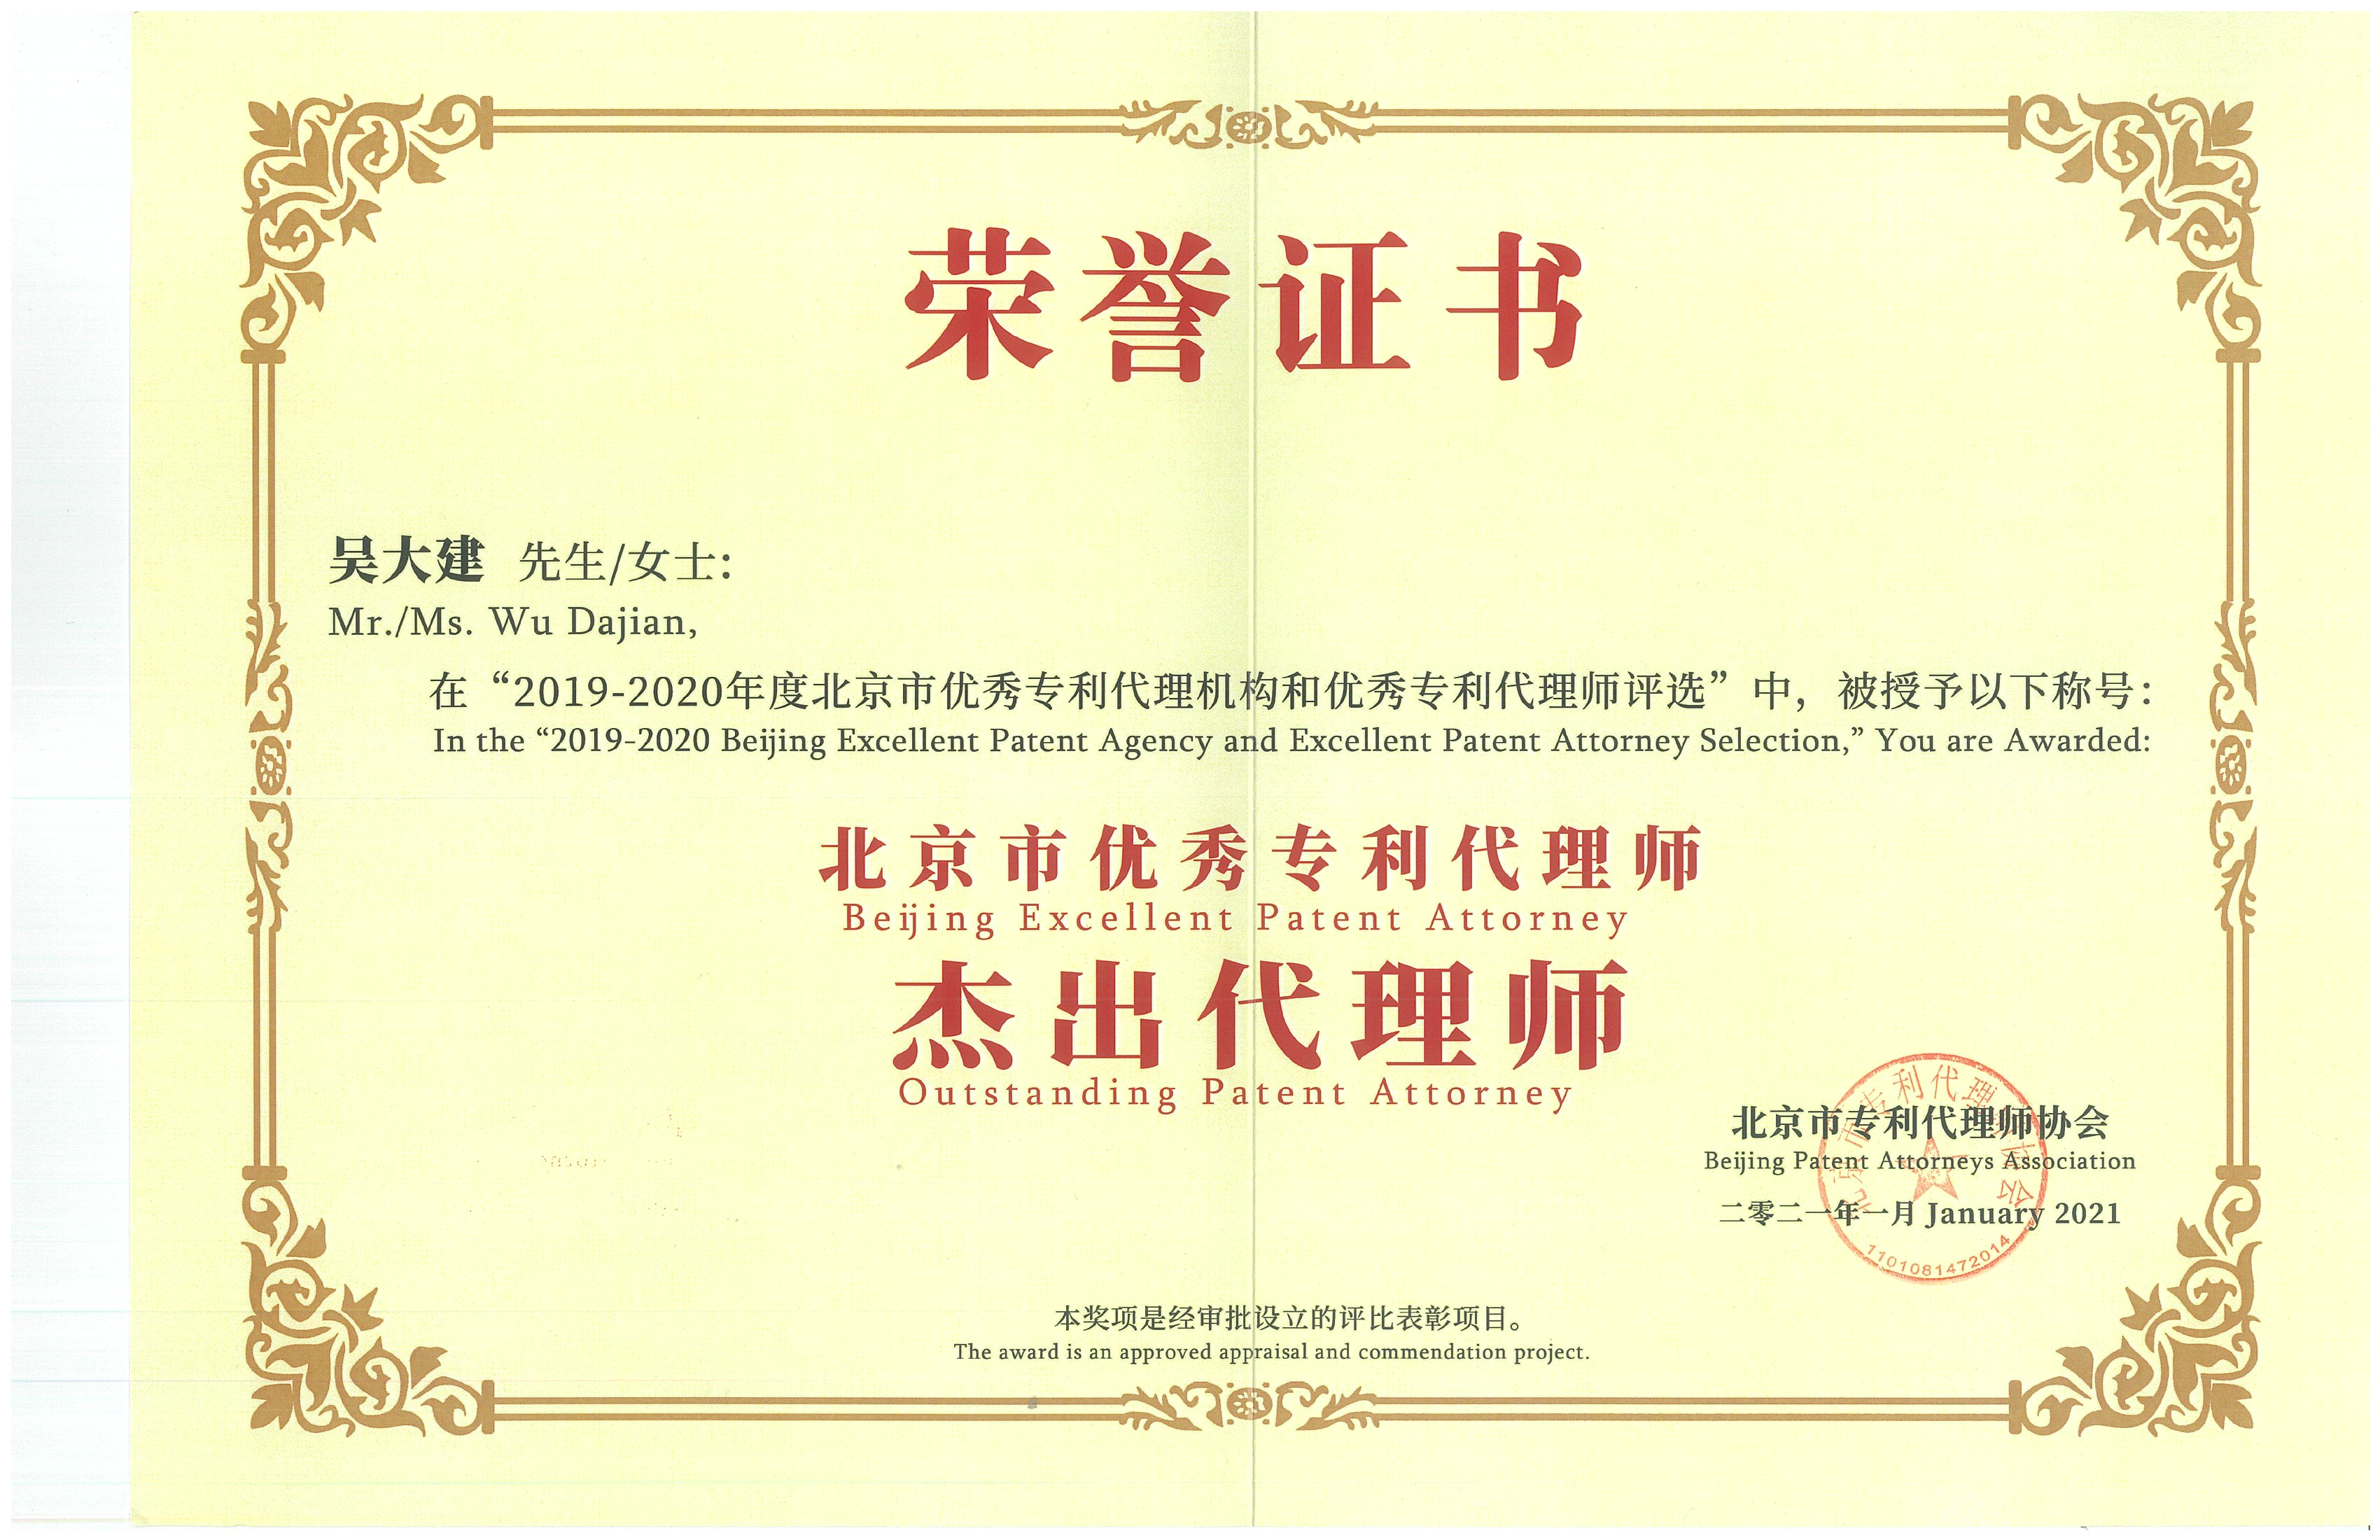 吴大建所长入选20192020年度北京市优秀专利代理师